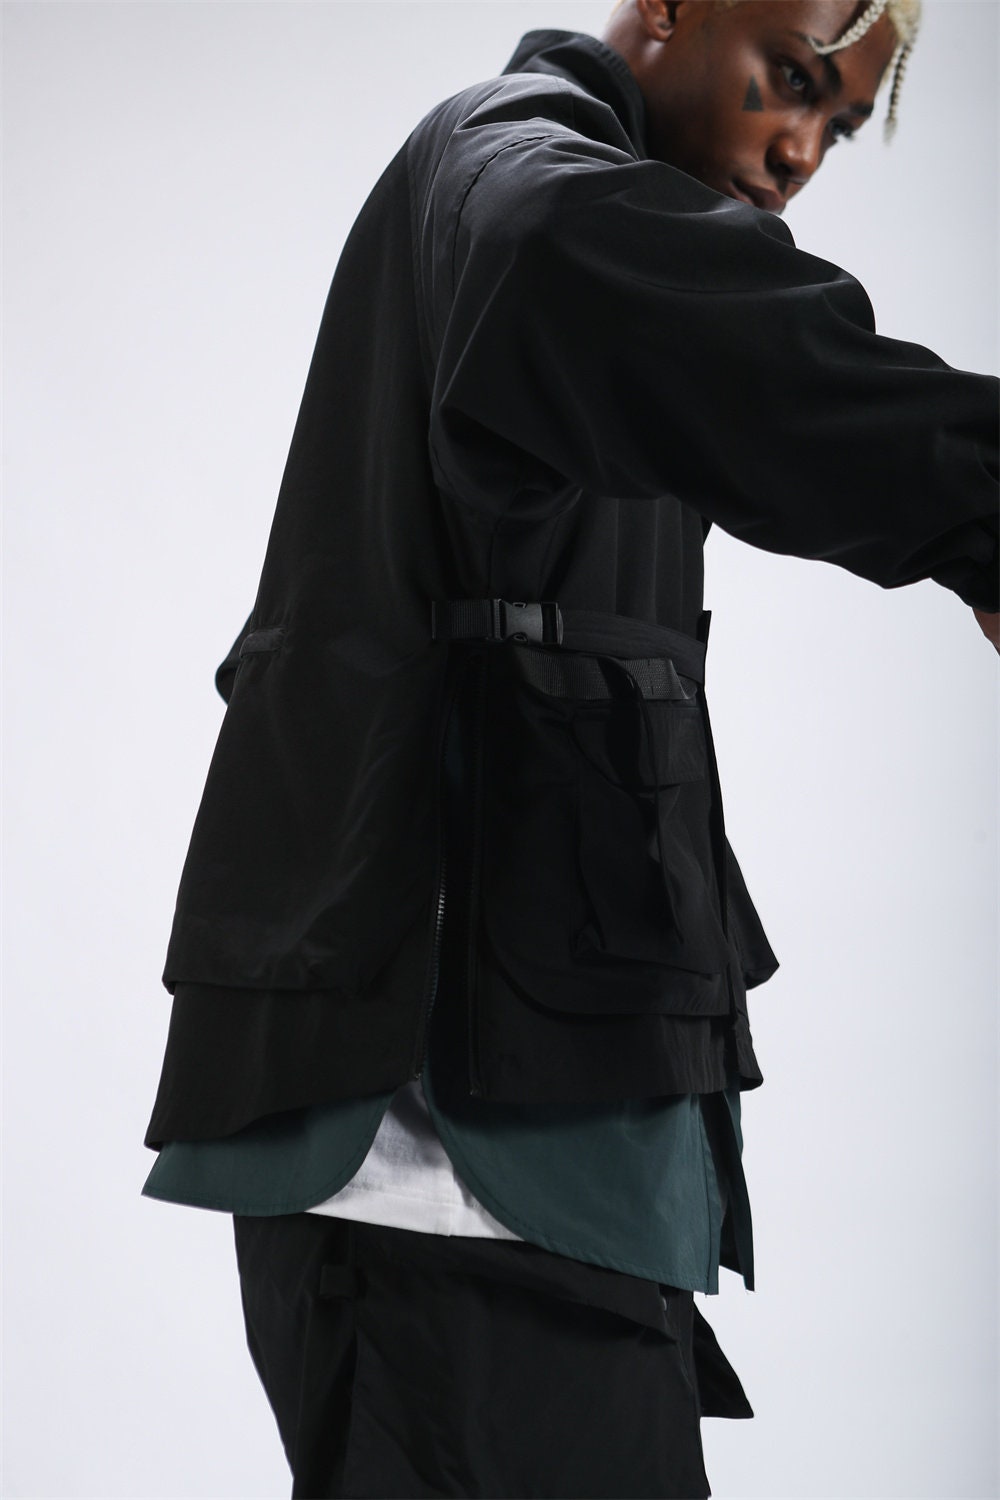 Techwear Tactical Black Cargo Jacket For Men Streetwear Urban Fashion Casual Oversized Fit Windbreaker